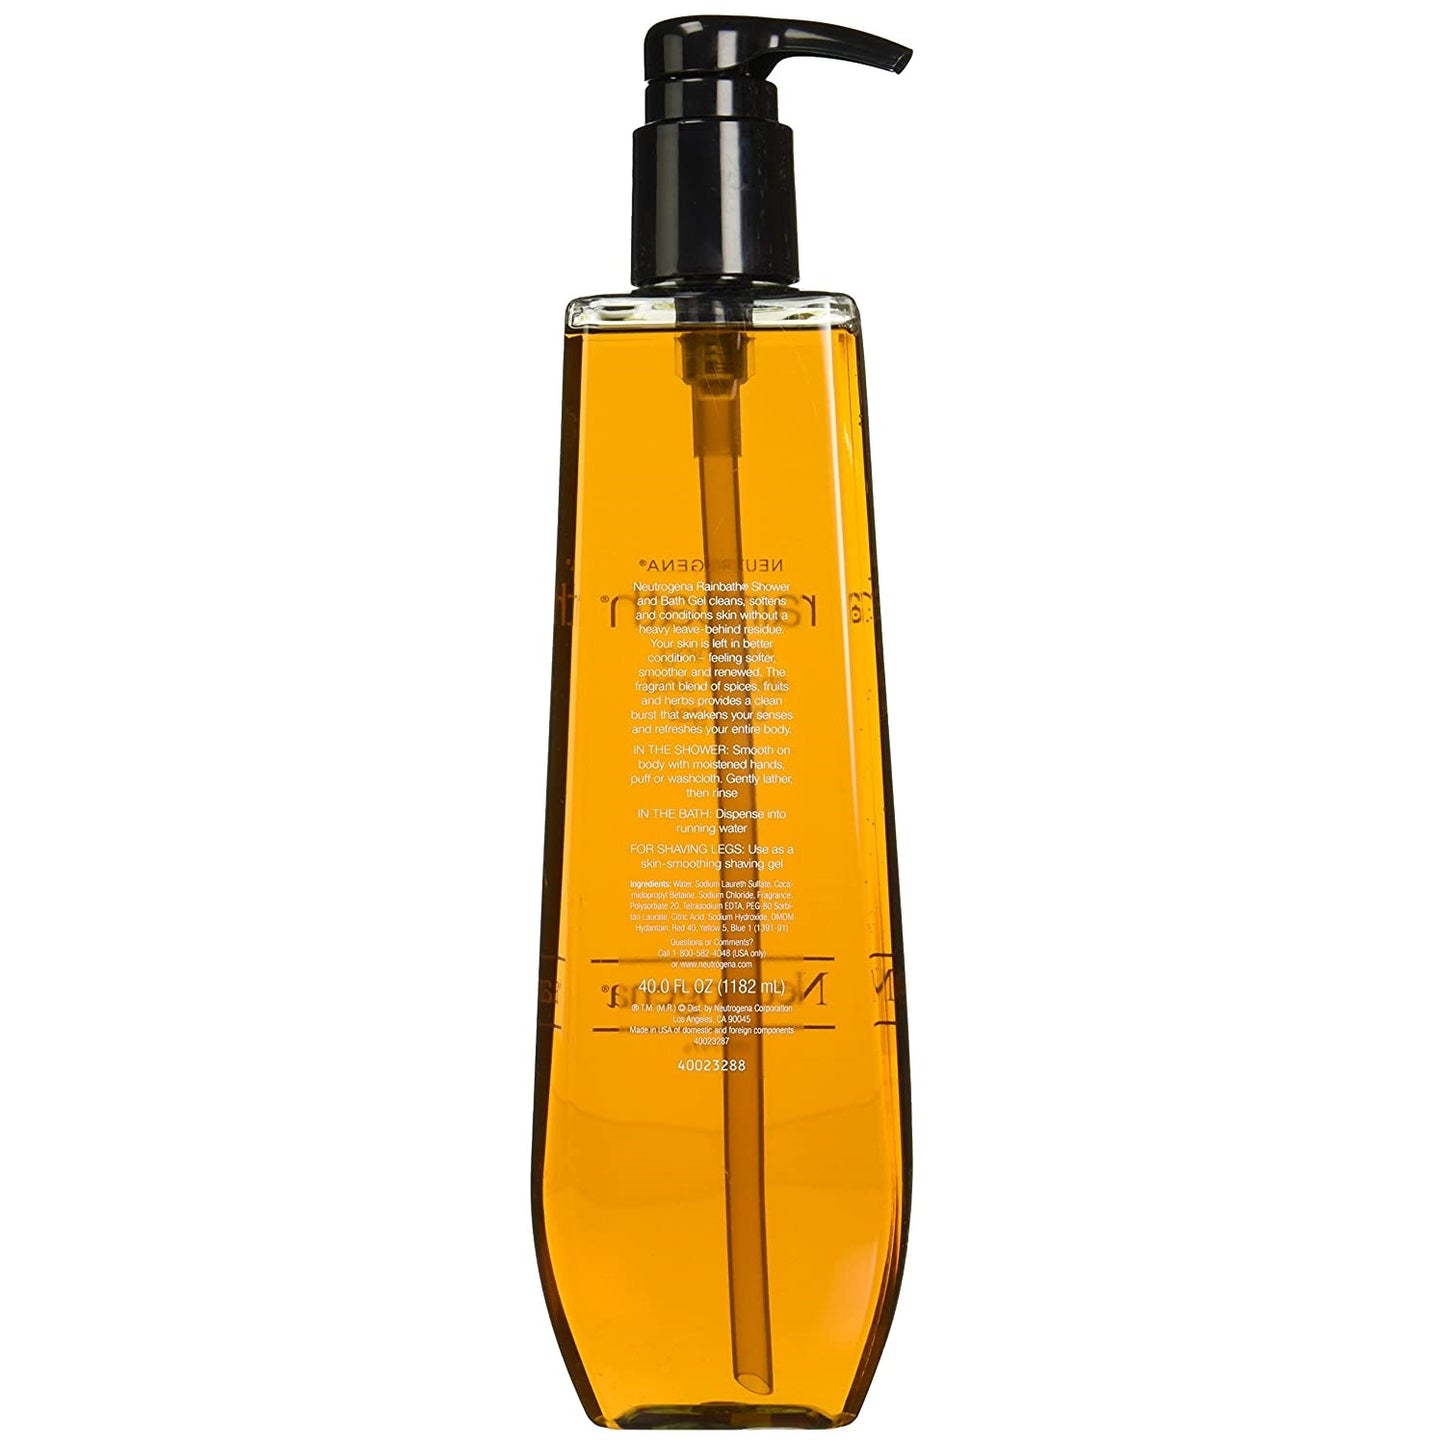 Neutrogena Rainbath Refreshing Shower and Bath Gel 40oz (1182ml)